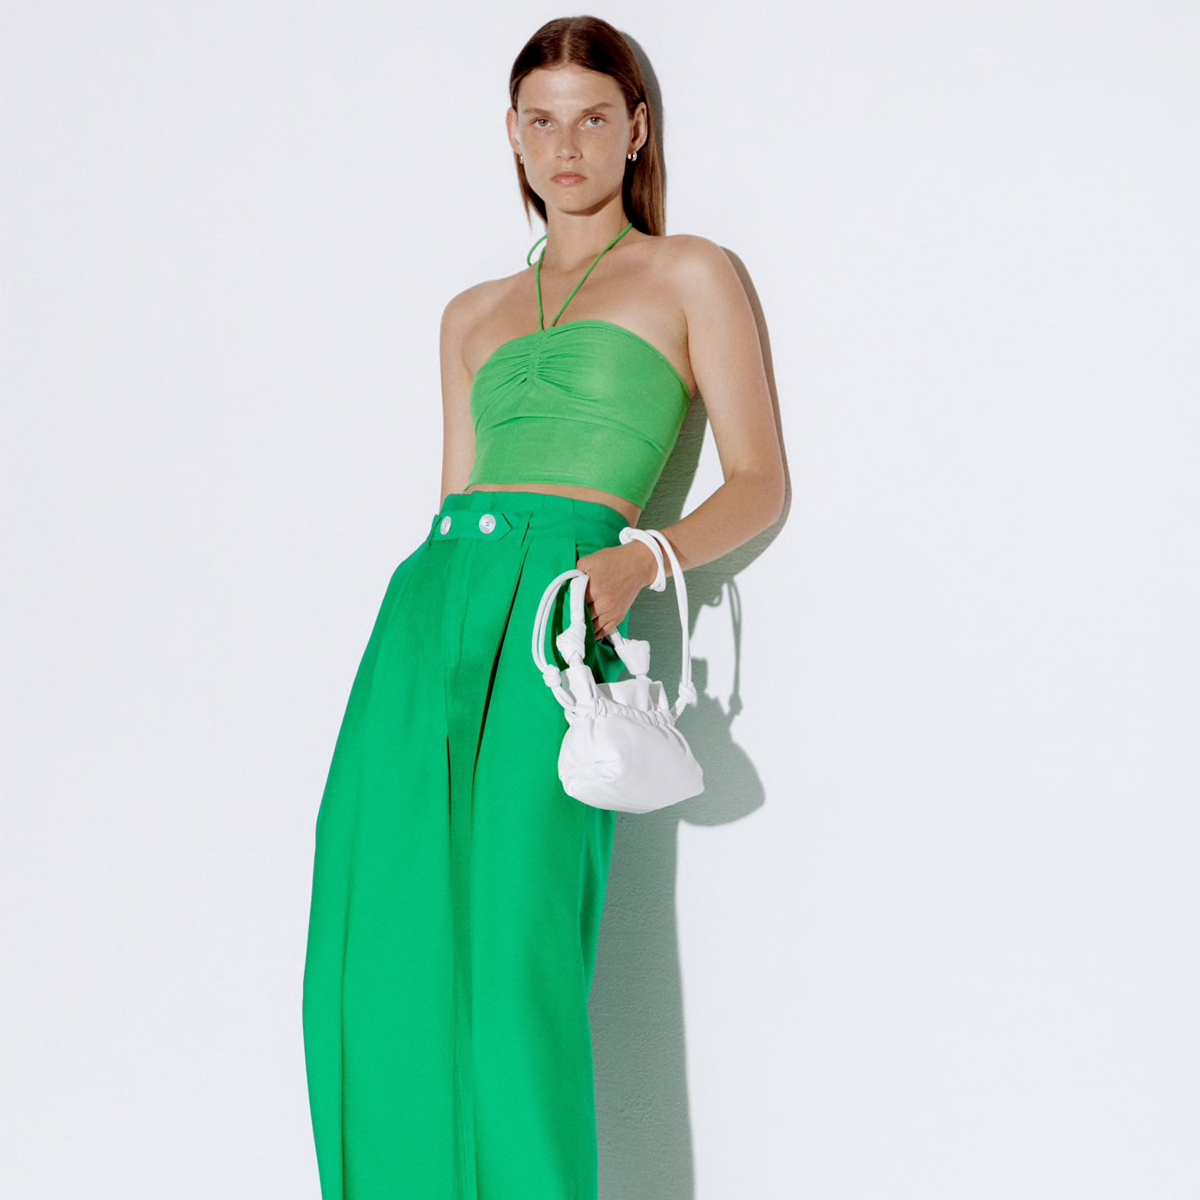 Zara Basics size Medium Pants – Jellybeansdress4less